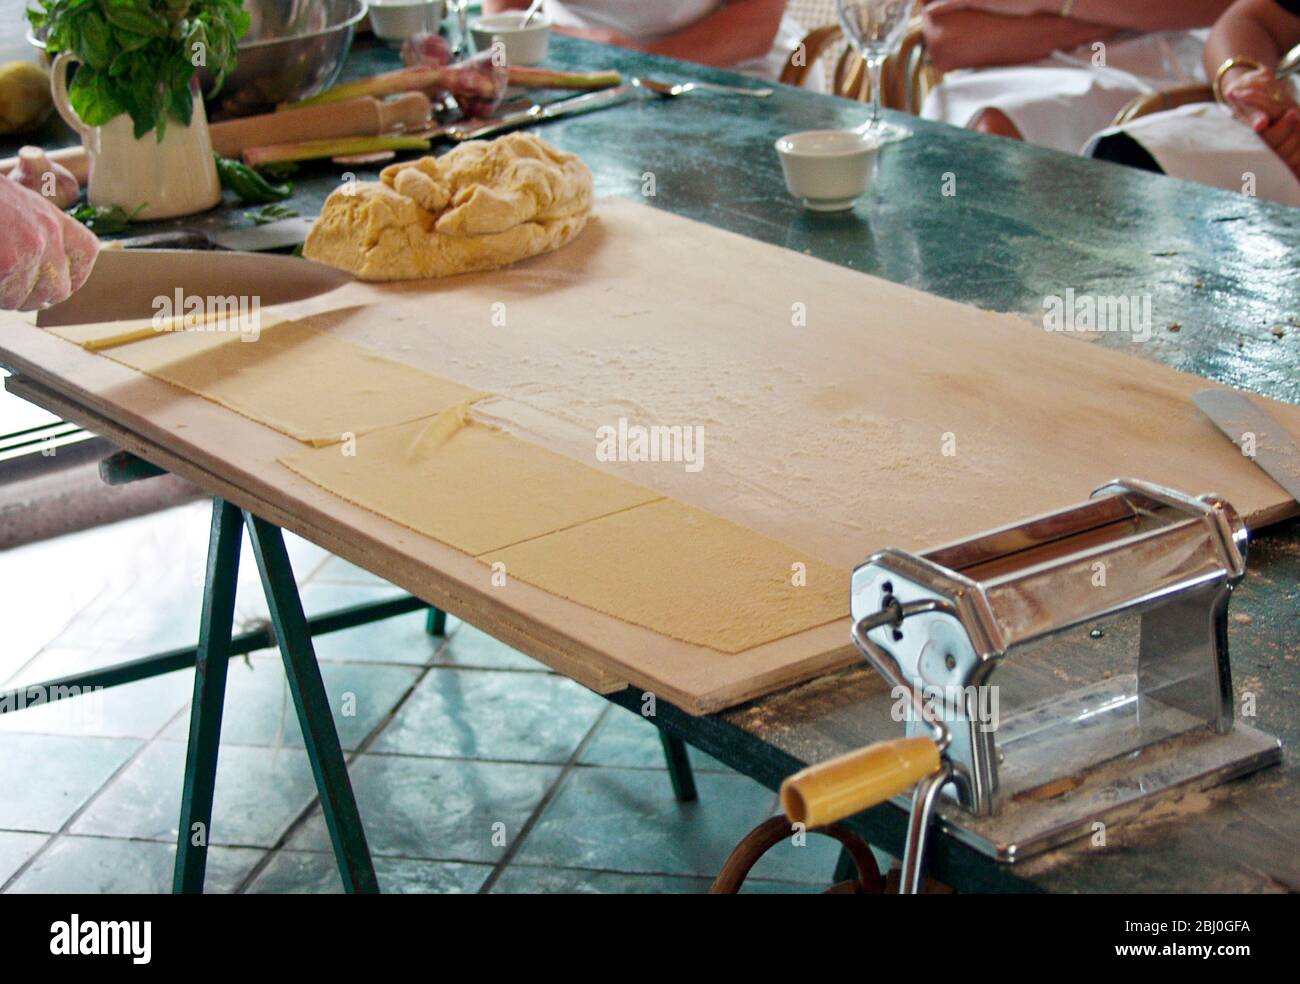 La preparazione della pasta è stata dimostrata durante il corso di cucina italiana di fronte al pubblico - Foto Stock